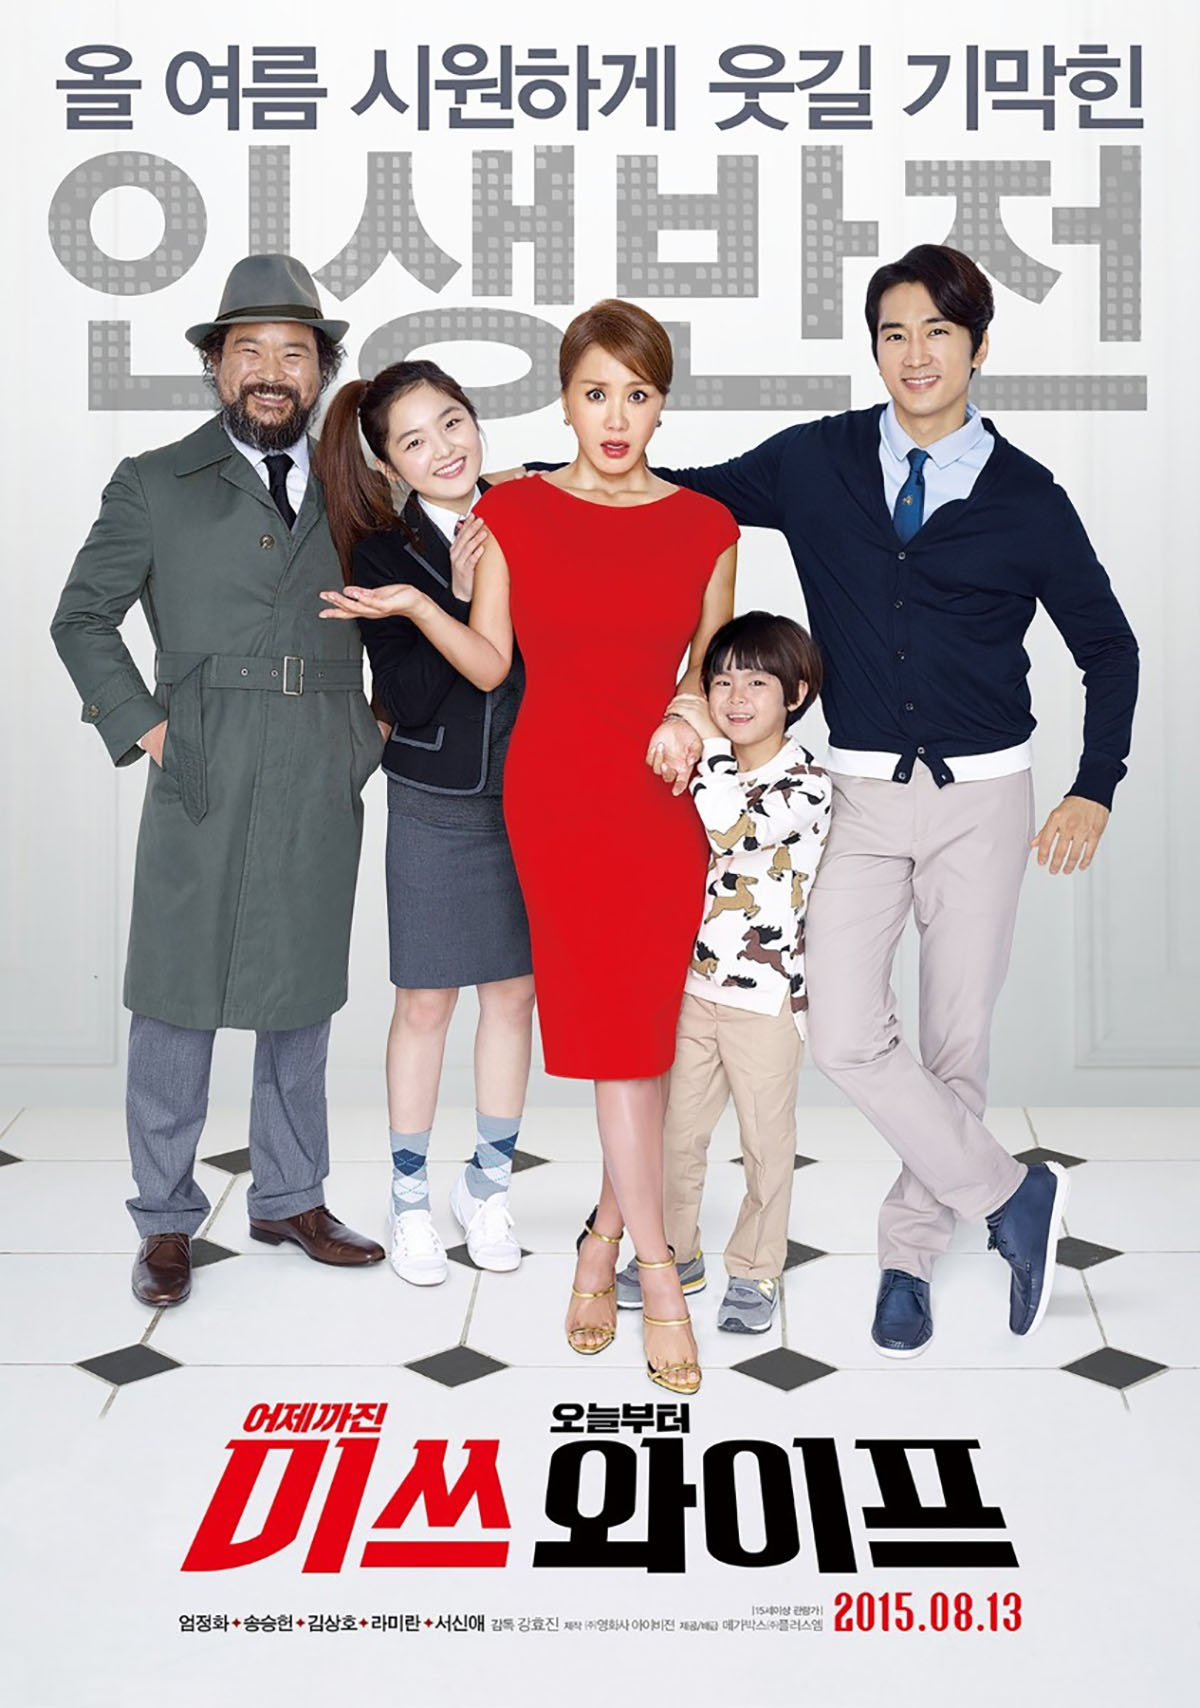 4 phim điện ảnh Hàn về gia đình khiến bạn ngập trong nụ cười lẫn nước mắt